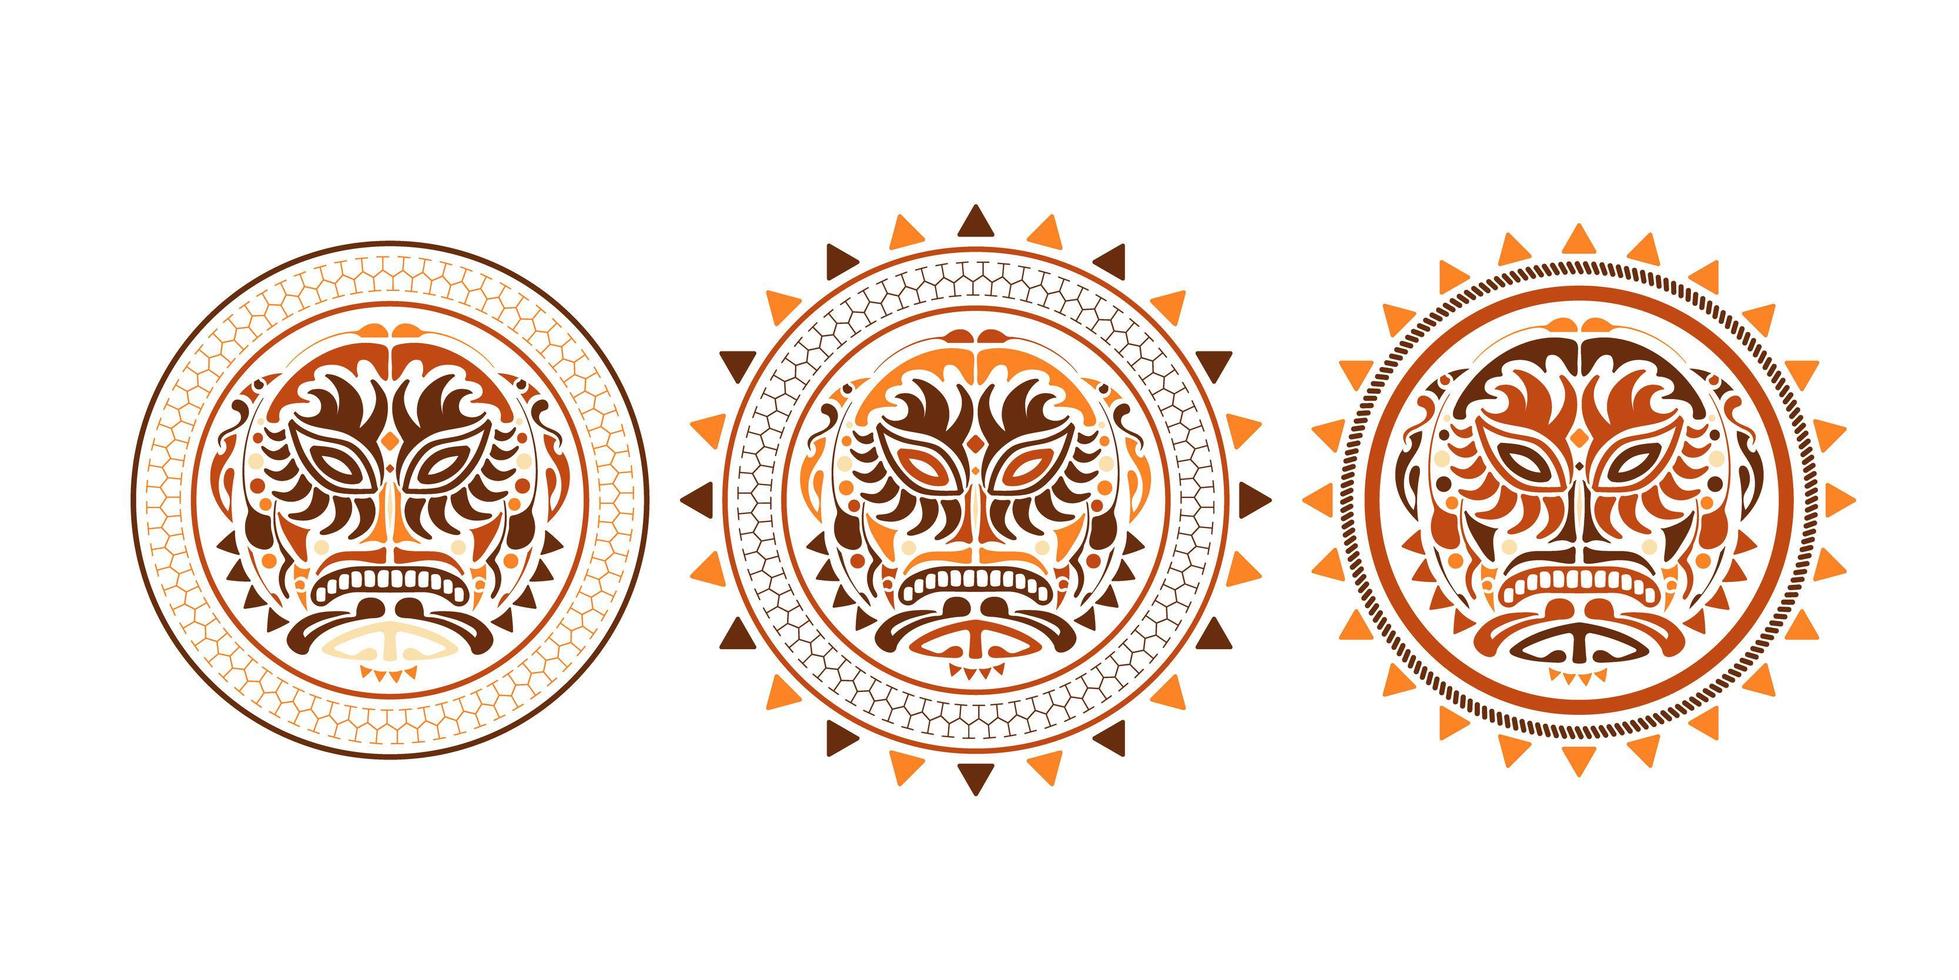 Stammesmaske ethnischer Satz. polynesische farbige muster der gesichtsillustration auf weißem hintergrund. Vektor-Illustration Satz von Voodoo-Gesichtssymbol. vektor